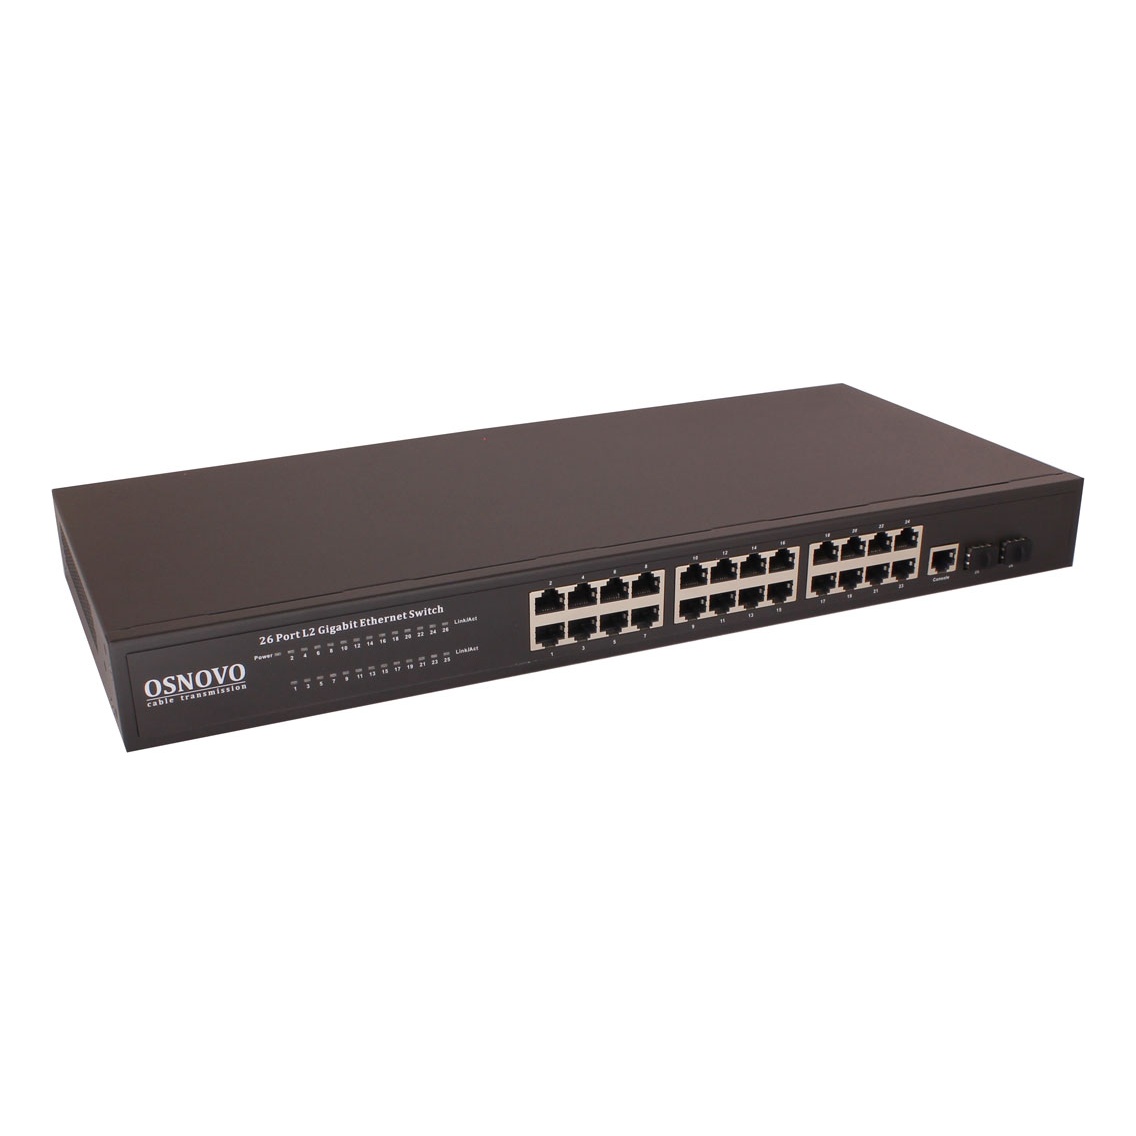 OSNOVO SW-72402/L2 SW-72402/L2 Управляемый (L2+) коммутатор Gigabit Ethernet на 26 портов